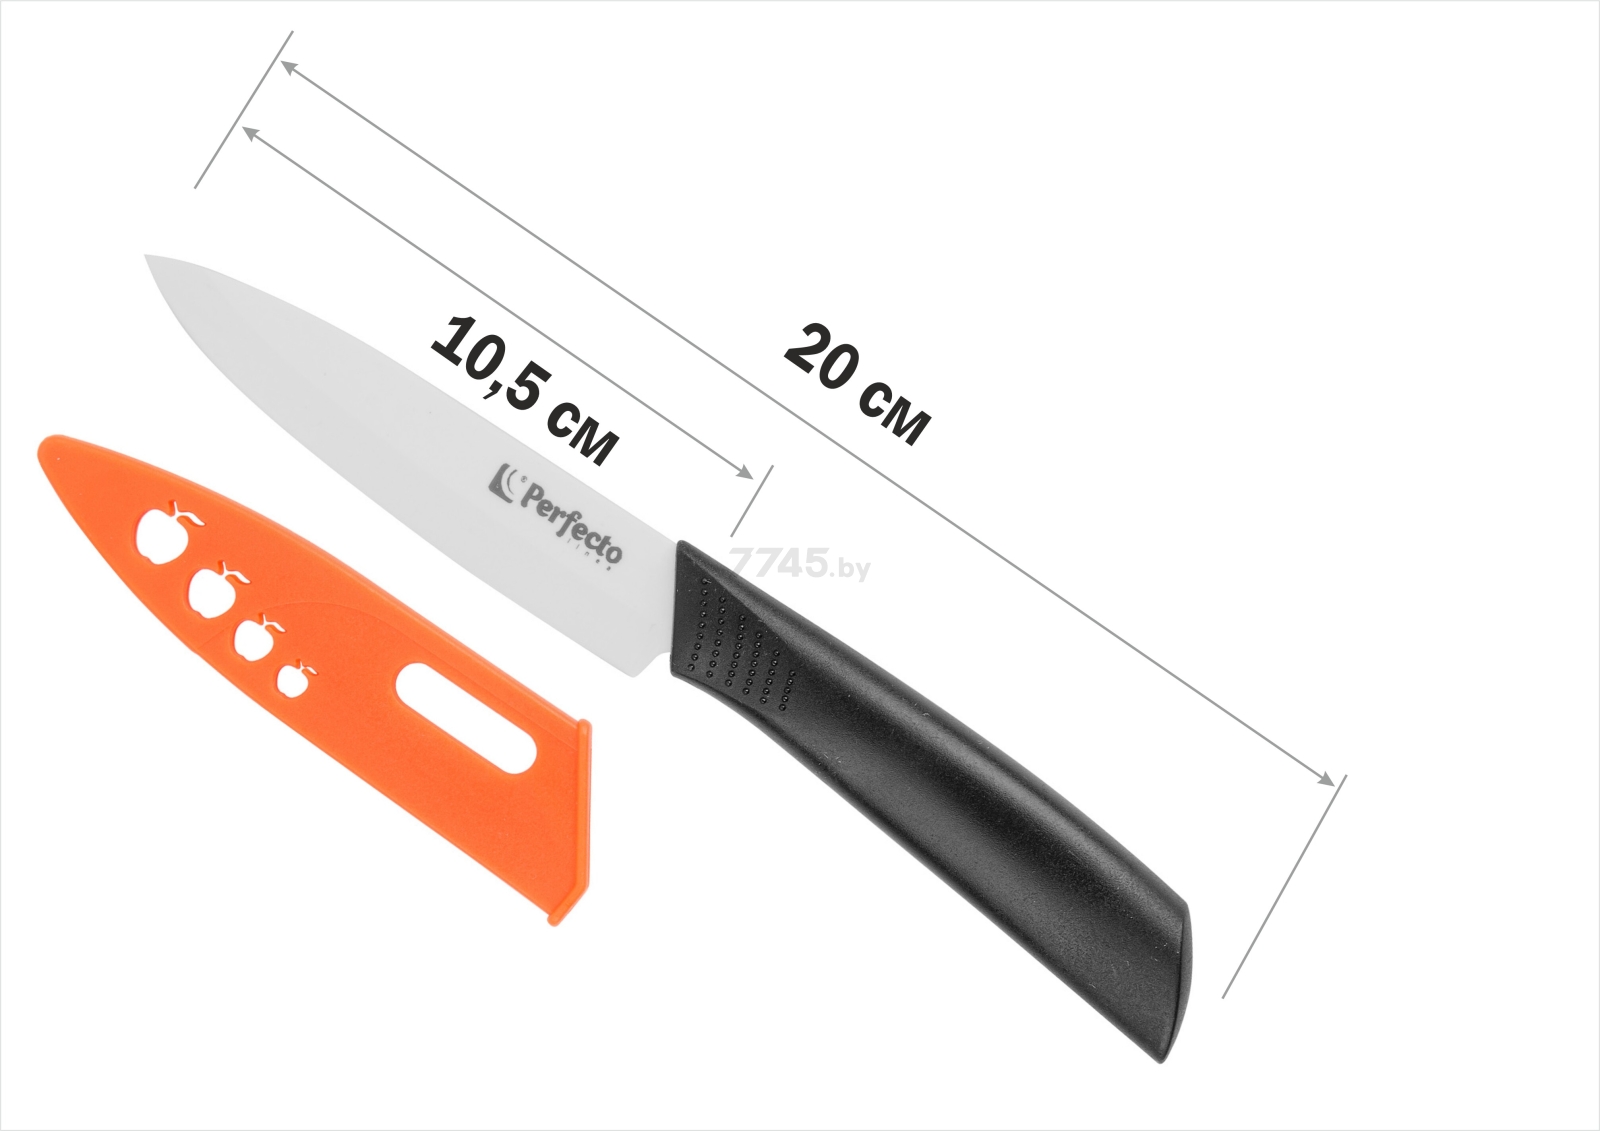 Нож кухонный PERFECTO LINEA Handy (21-493524) - Фото 3